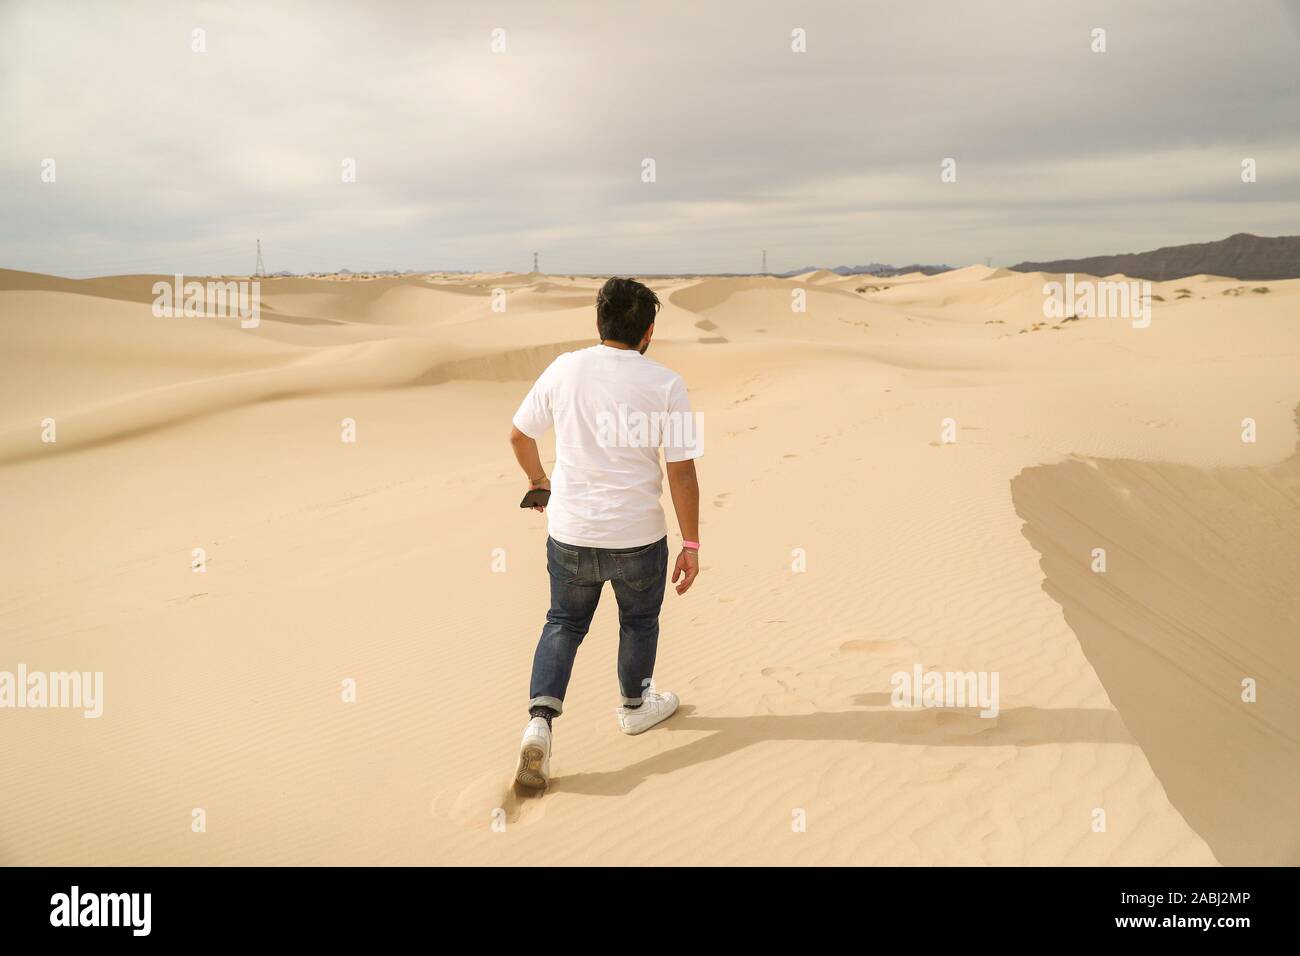 Un homme marche dunes de sable du désert, Chihuahua Mexique Samalayuca. 52 km au sud de Ciudad Juárez, au beau milieu du désert, zone connue sous le nom de Médanos Banque D'Images